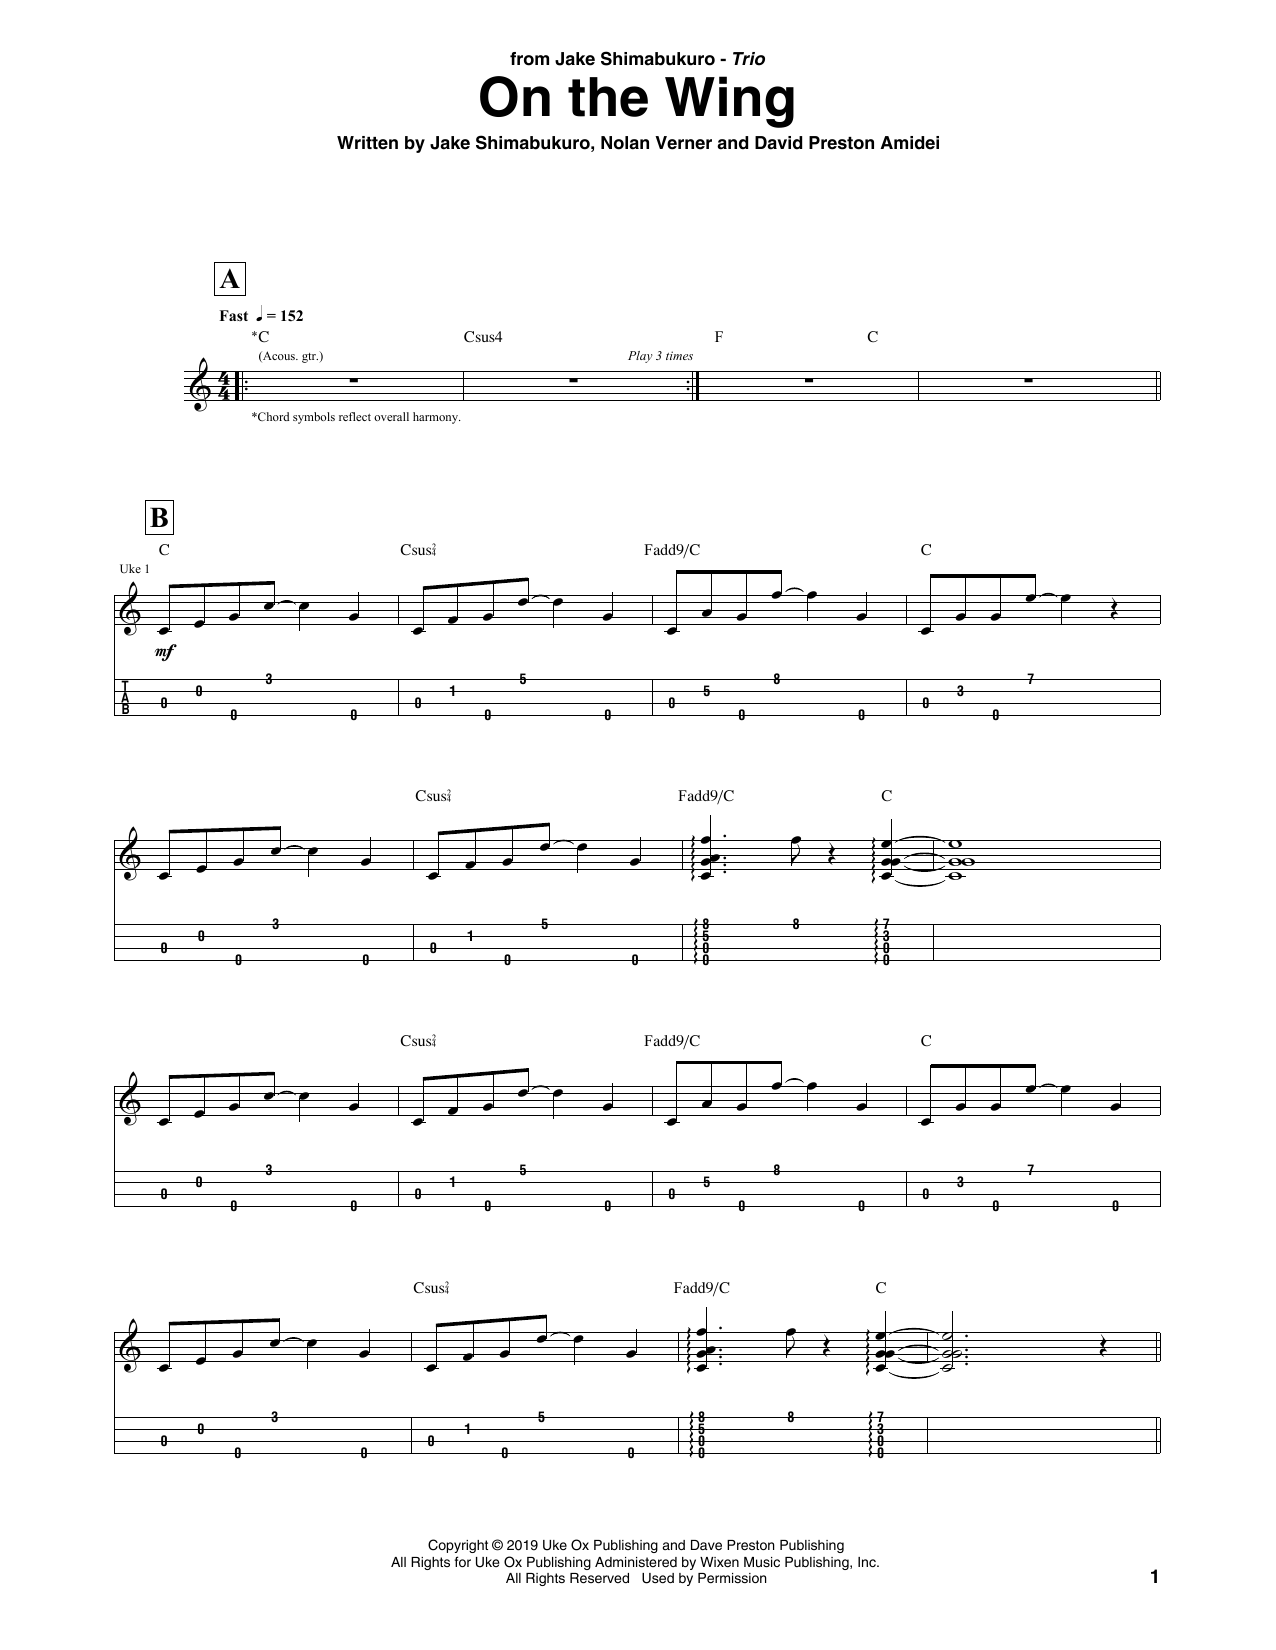 Jake Shimabukuro Trio On The Wing Sheet Music Notes & Chords for Ukulele Tab - Download or Print PDF